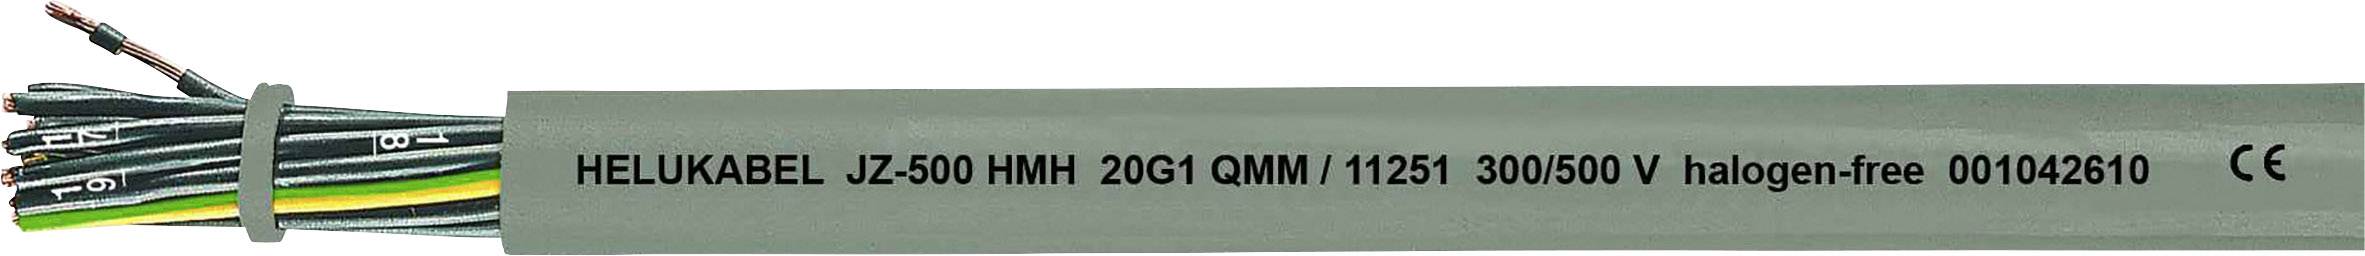 HELUKABEL JZ-500 HMH Steuerleitung 3 G 0.75 mm² Grau 11222-1000 1000 m